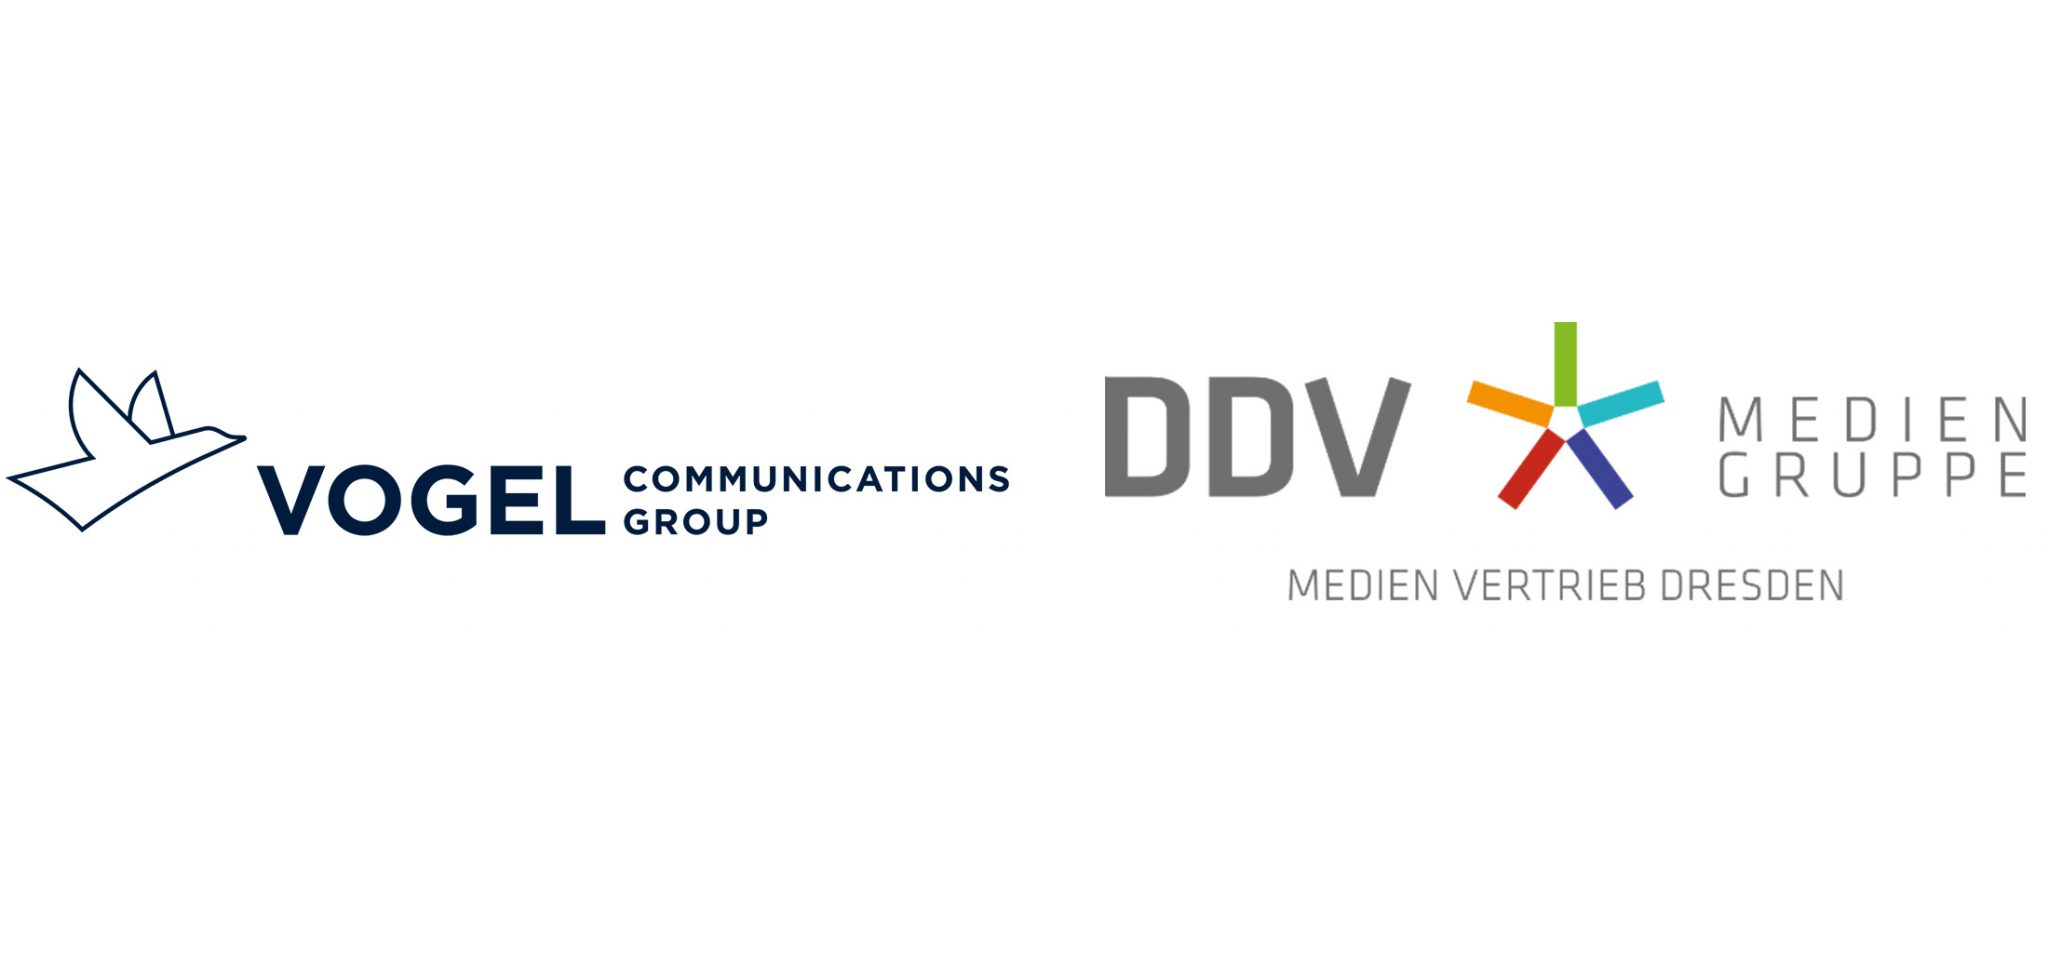 Seminarkunden Stellenanzeigen texten Vogel Communications Group DDV Mediengruppe